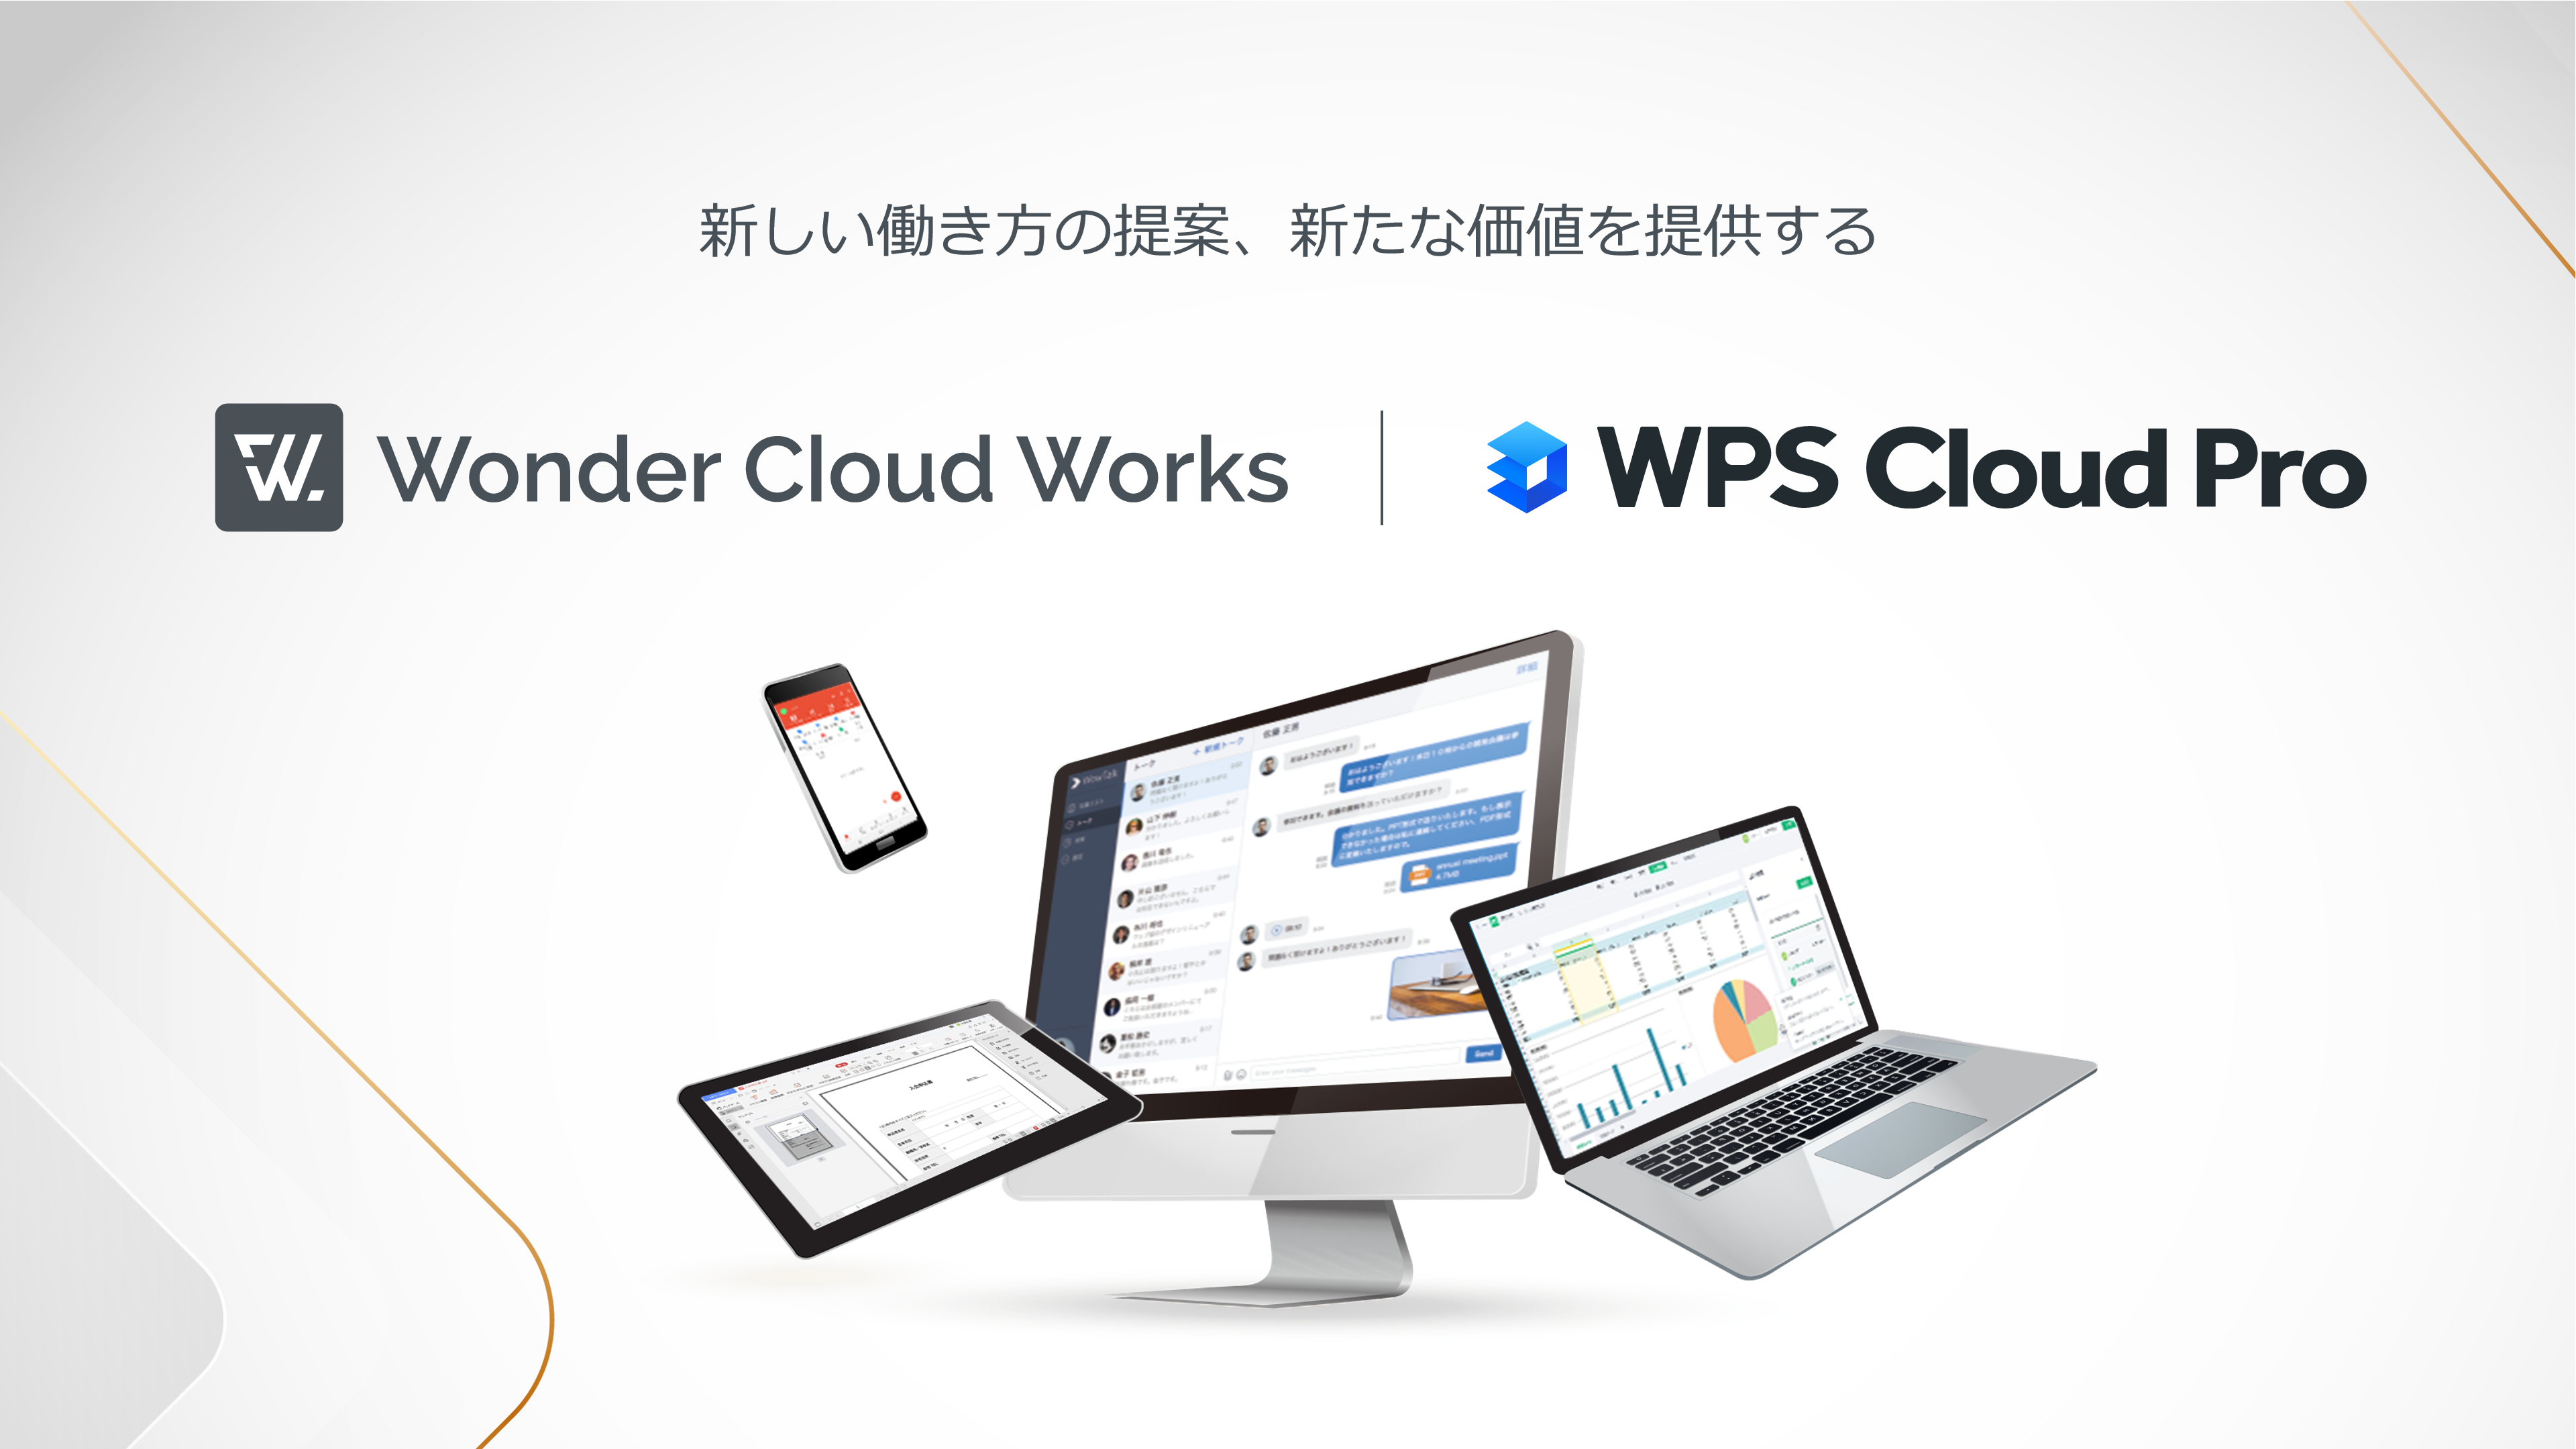 キングソフトグループ 法人向け新クラウドサービス 『Wonder Cloud Works』 をリリース~企業資産をクラウ